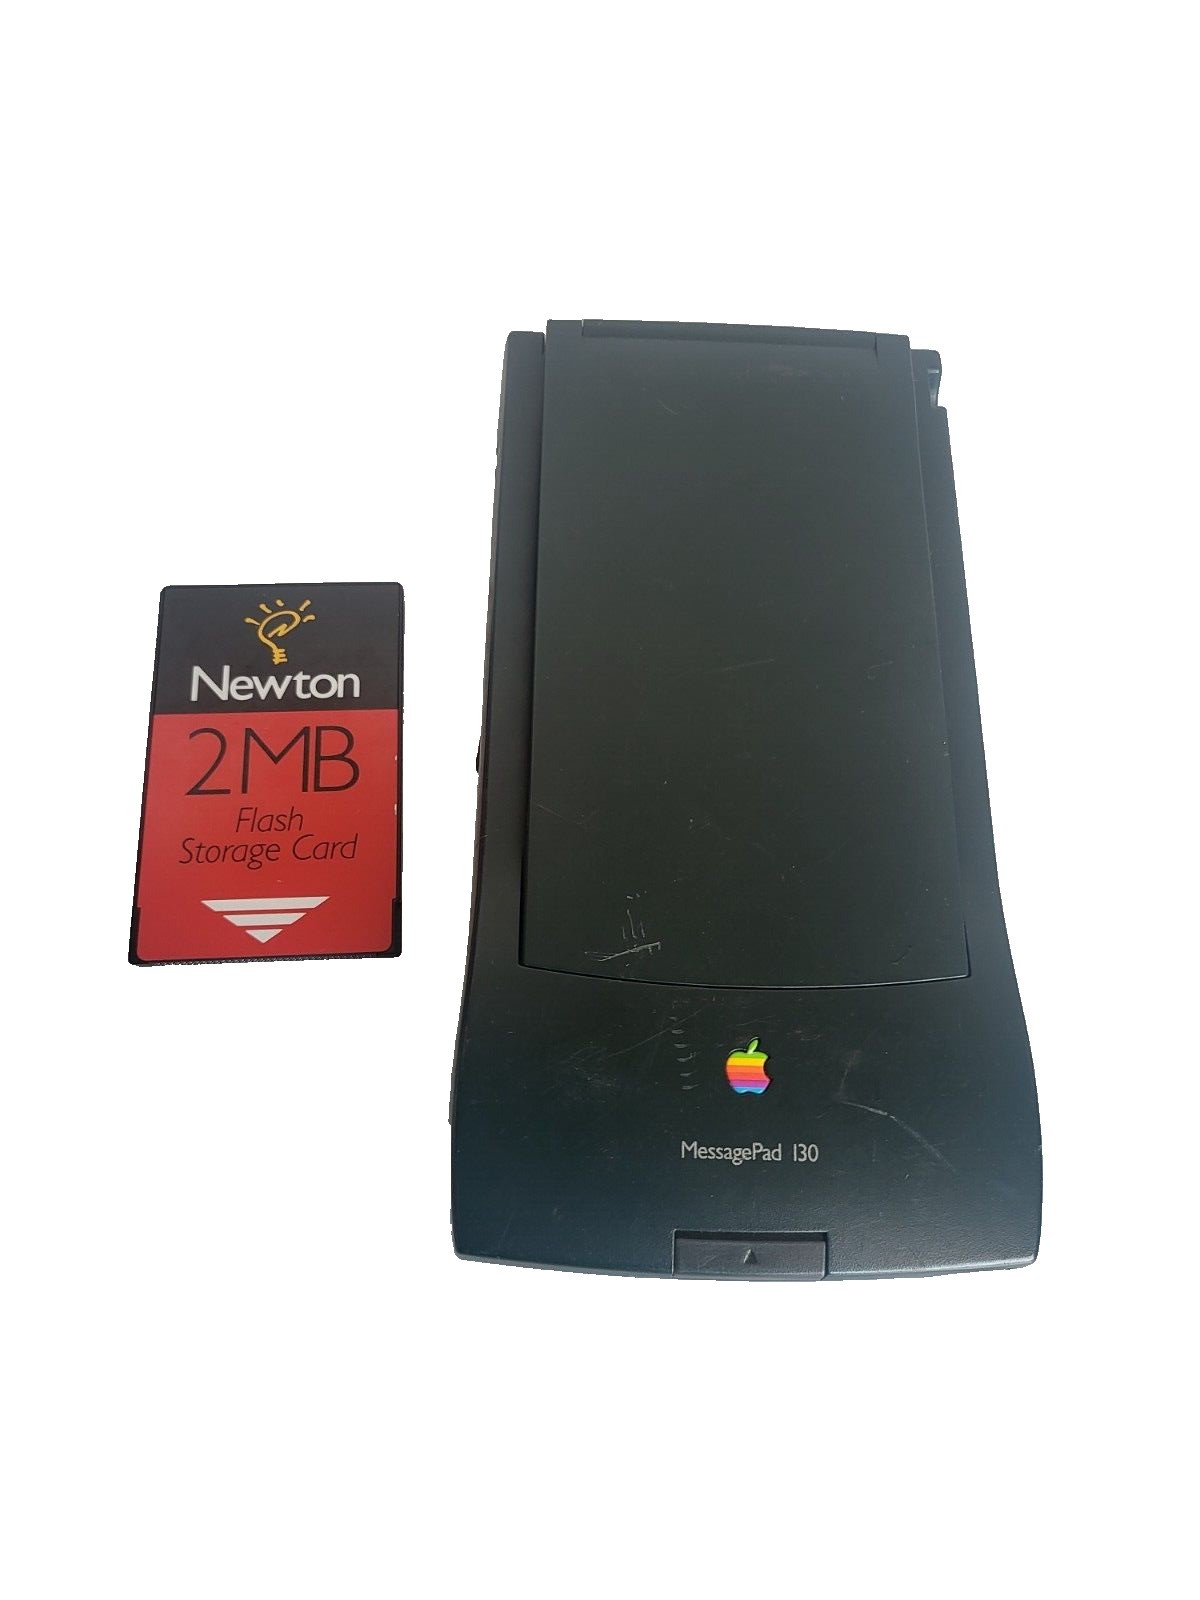 Rare Vintage Apple Newton MessagePad 130 H0196 digital Tablet i30 - UNTESTED